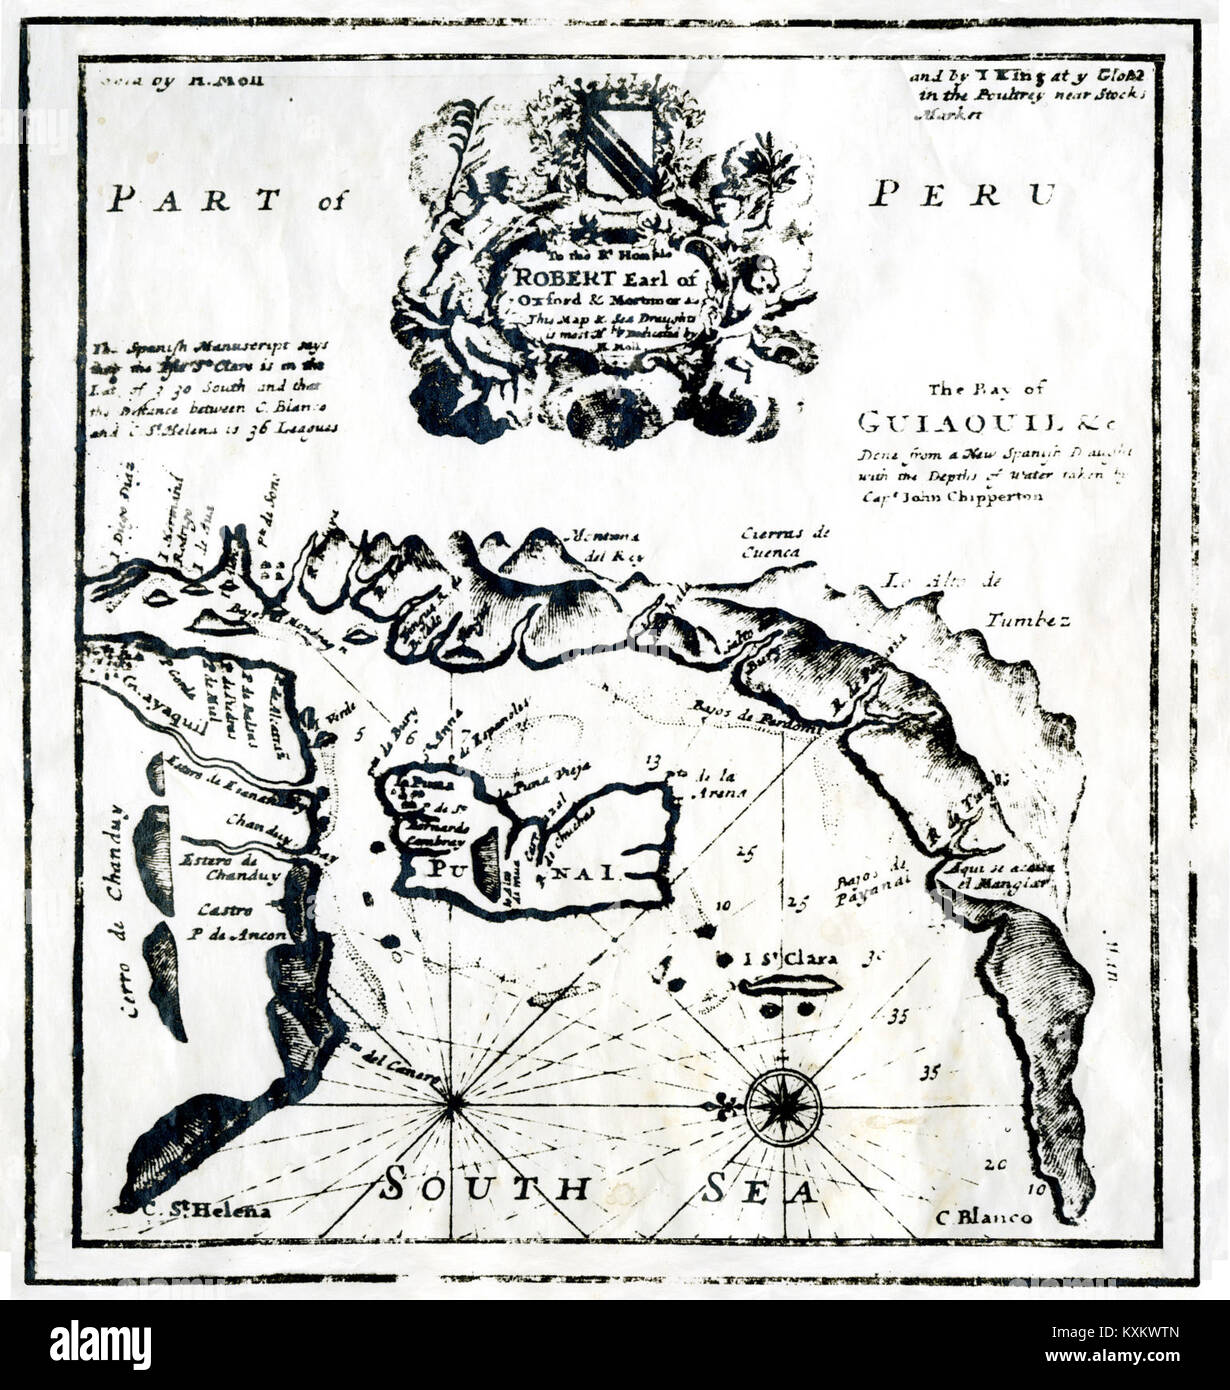 Bahía de Guayaquil según el pirata John Clipperton y dedicado al Conde Robert de Oxford - AHG Stock Photo